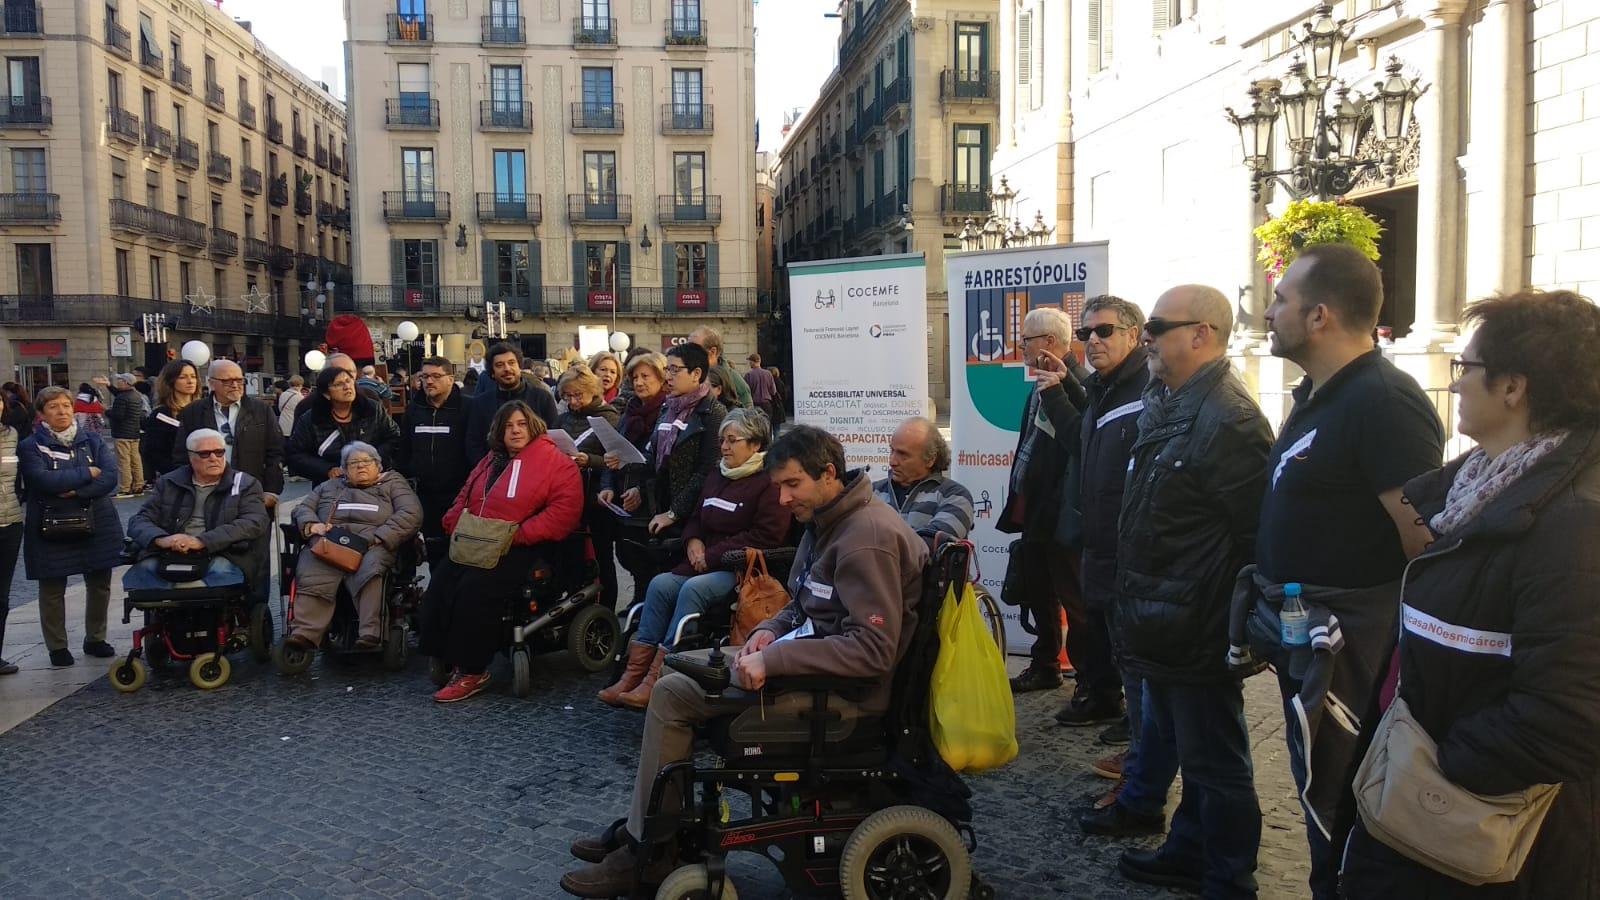  •	COCEMFE Catalunya i COCEMFE Barcelona han dut a terme una de les 37 concentracions que s'han celebrat a Espanya per reclamar que no hi hagi persones amb discapacitat sense poder sortir de casa per falta d'accessibilitat